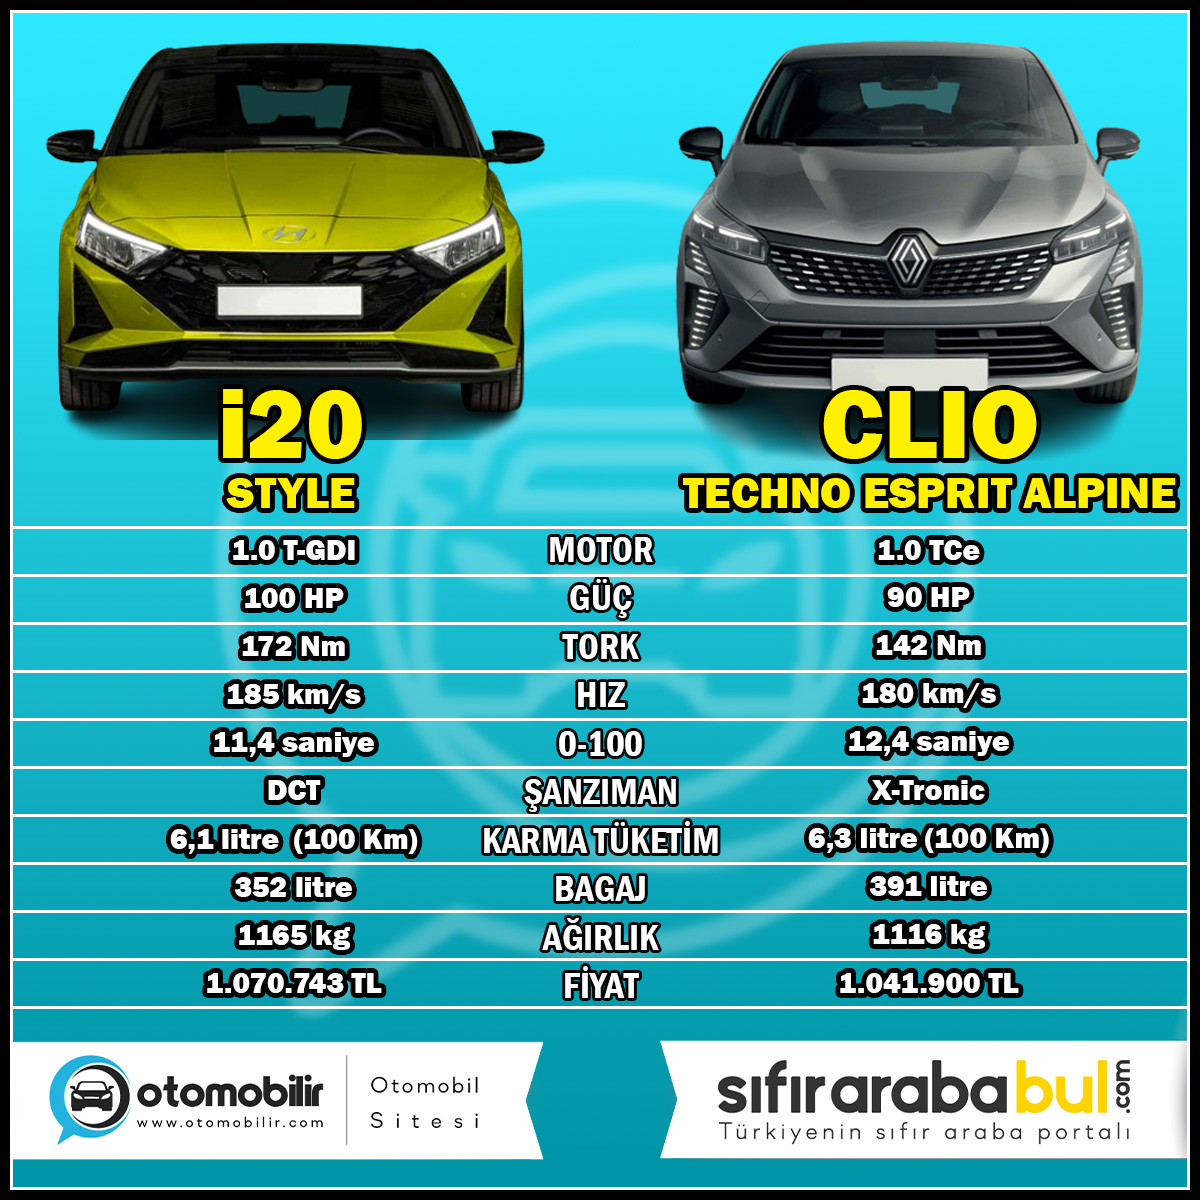 ✅Hyundai i20 ve Renault Clio karşılaştırması:

#hyundaii20 #renaultclio #i20 #clio